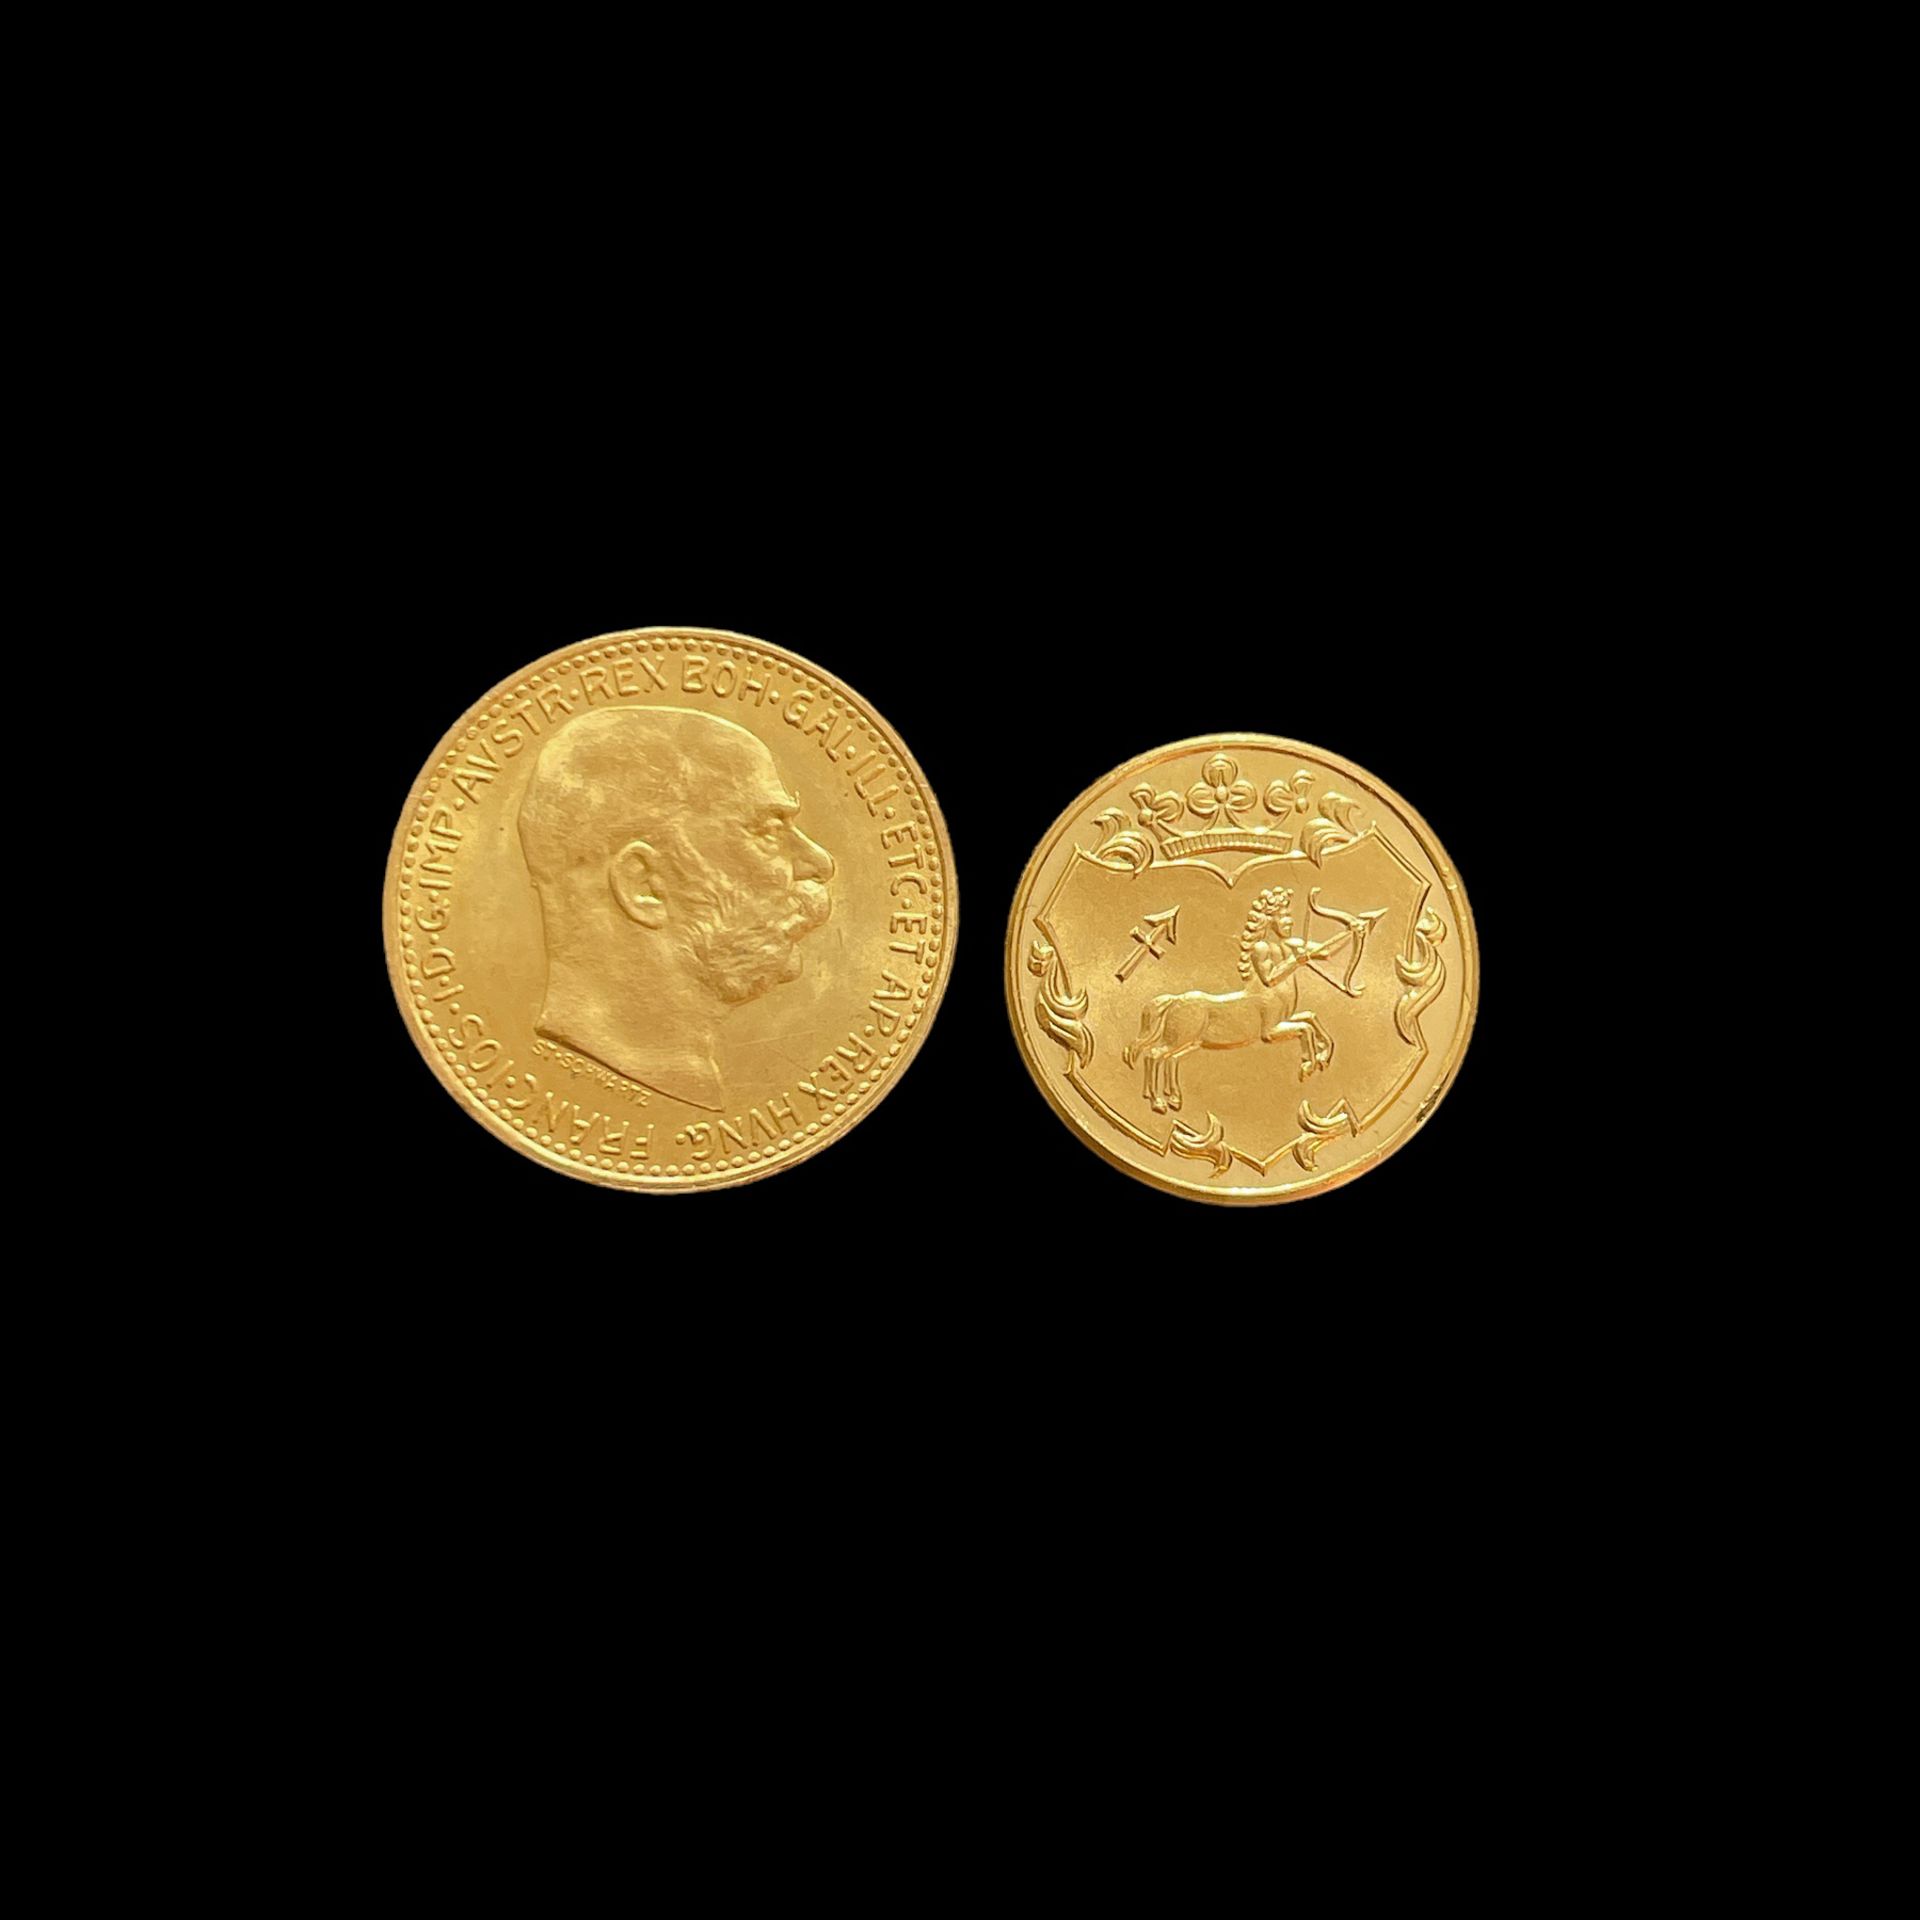 Goldmünze und Medaille